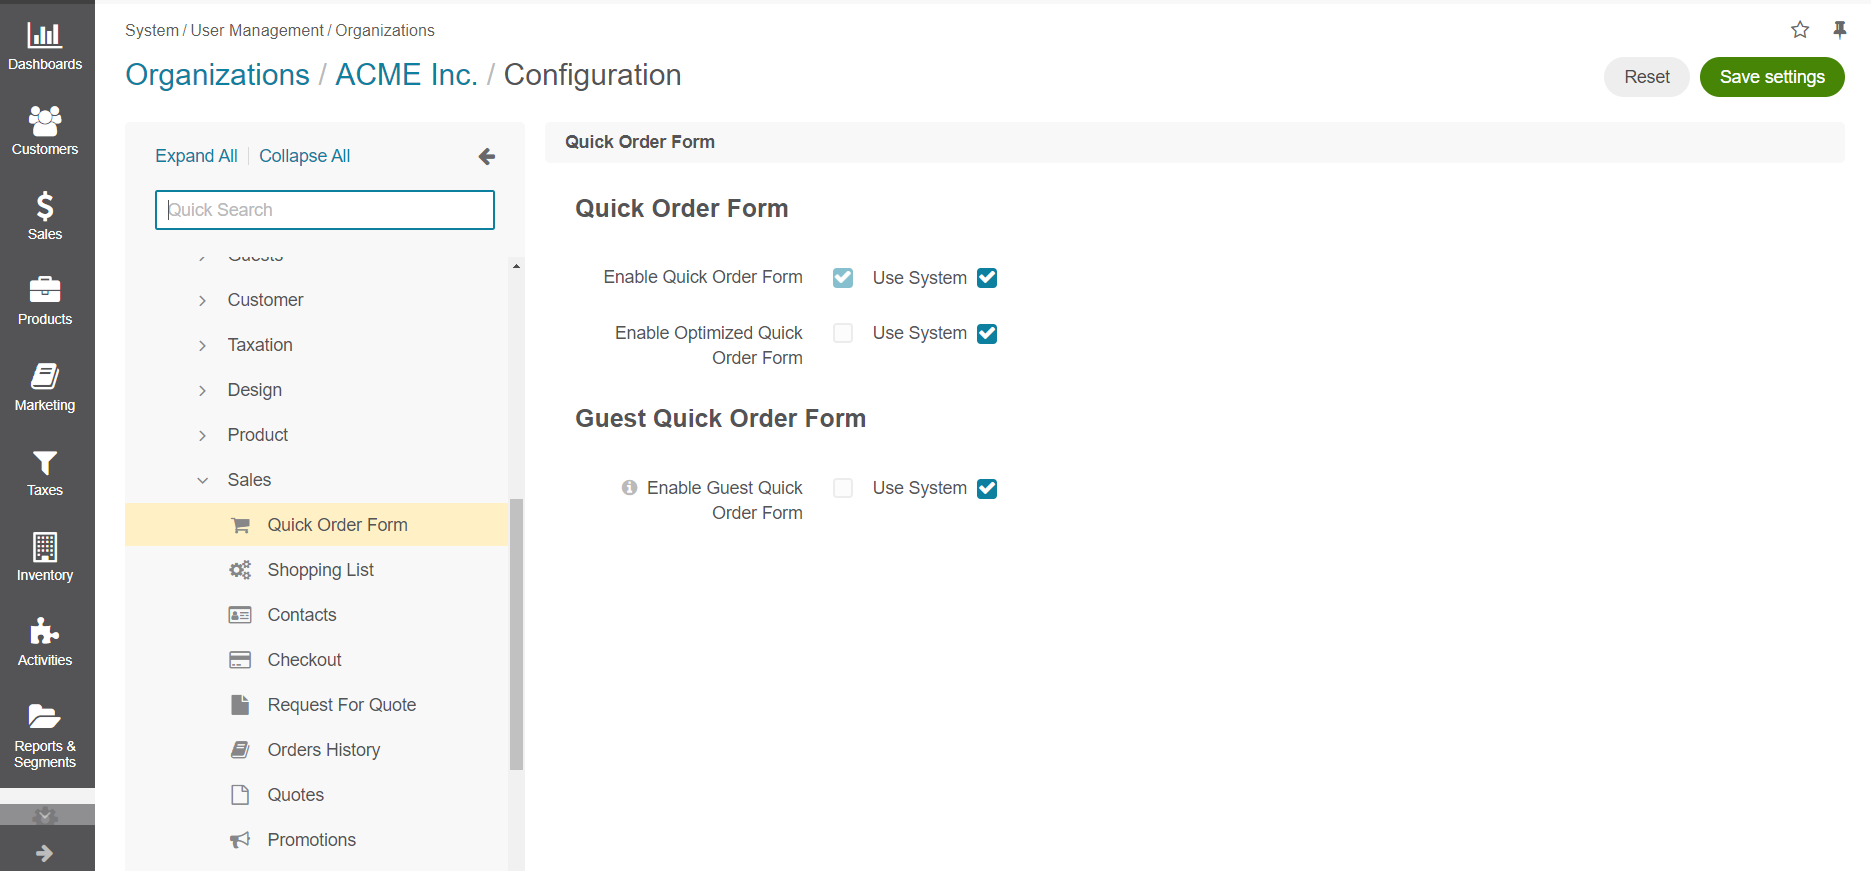 Configure quick order form per organization